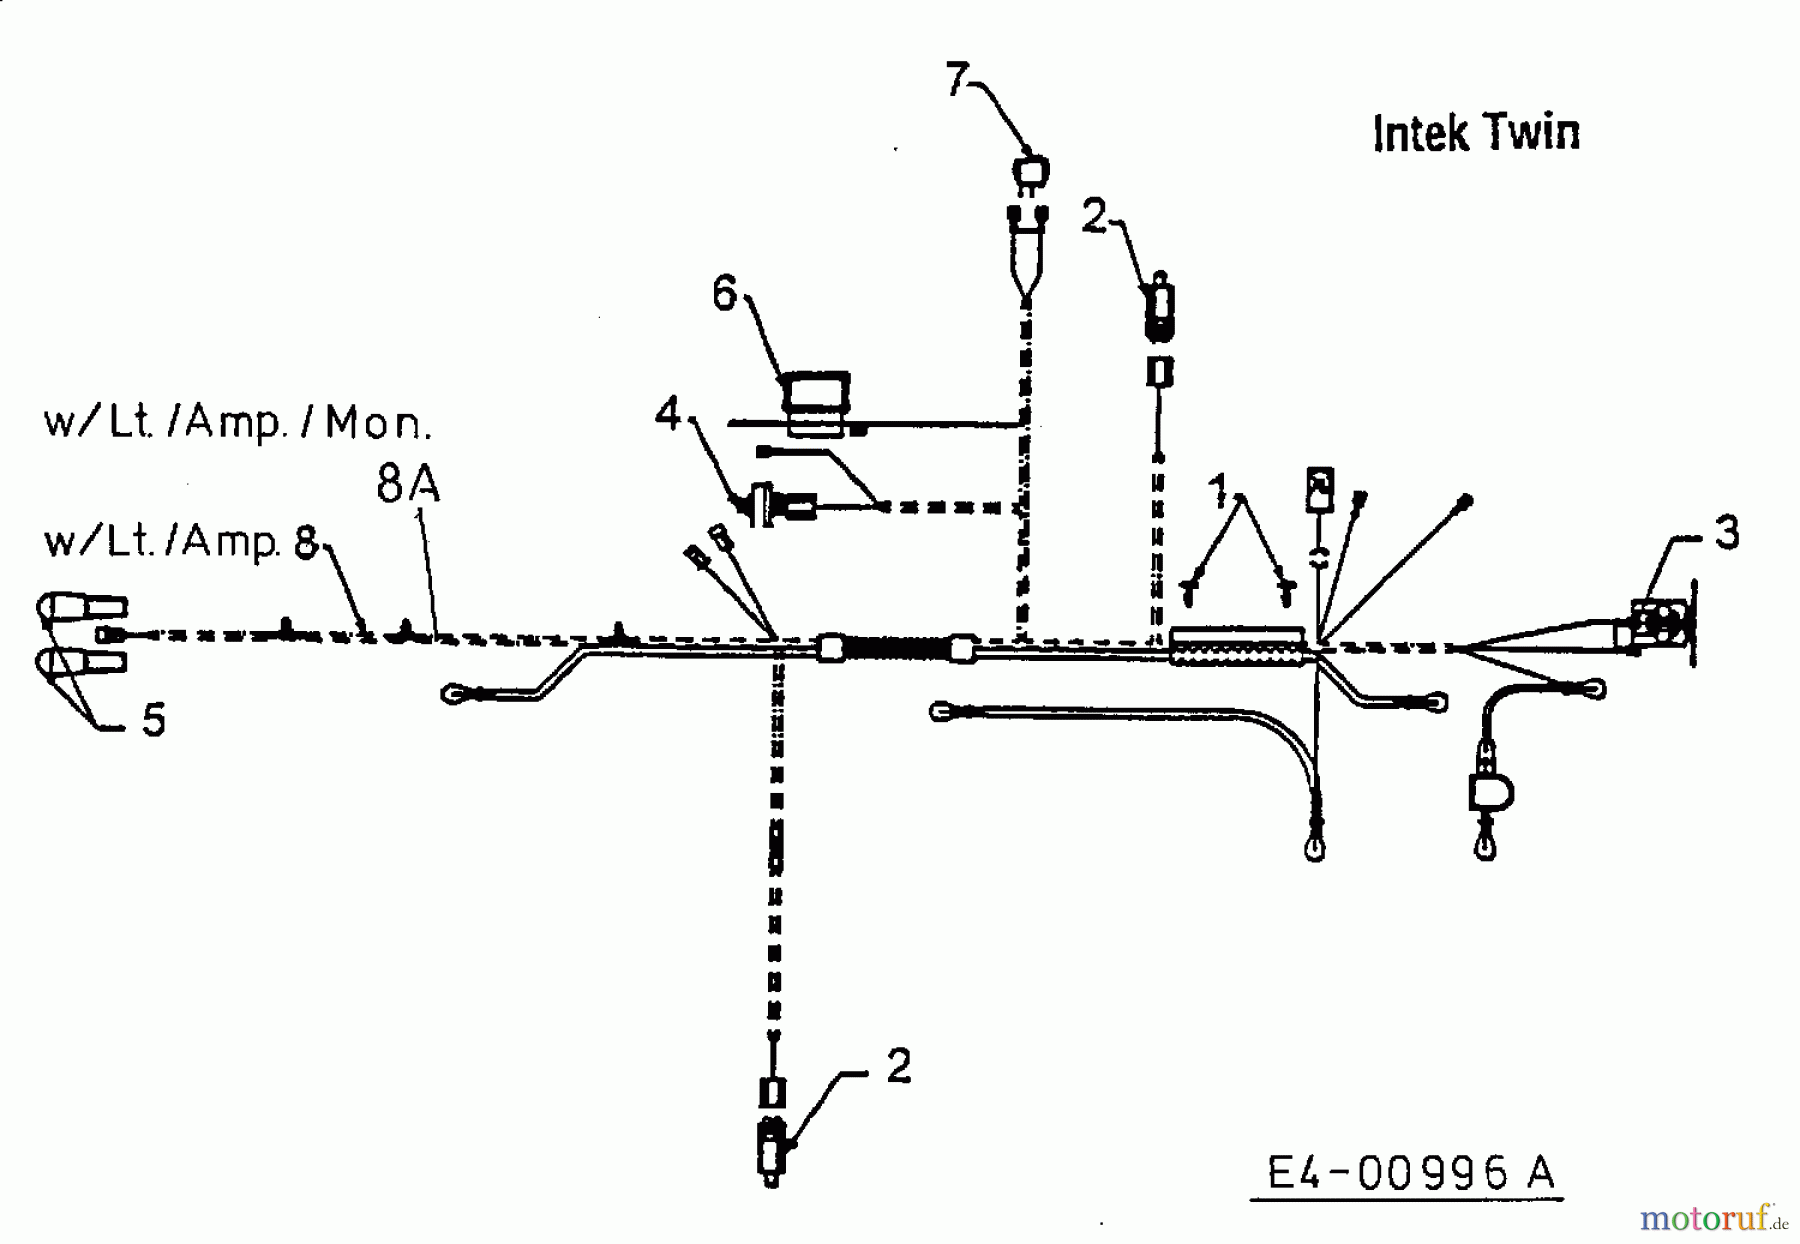  MTD Lawn tractors H 130 13AA695F678  (1998) Wiring diagram Intek Twin